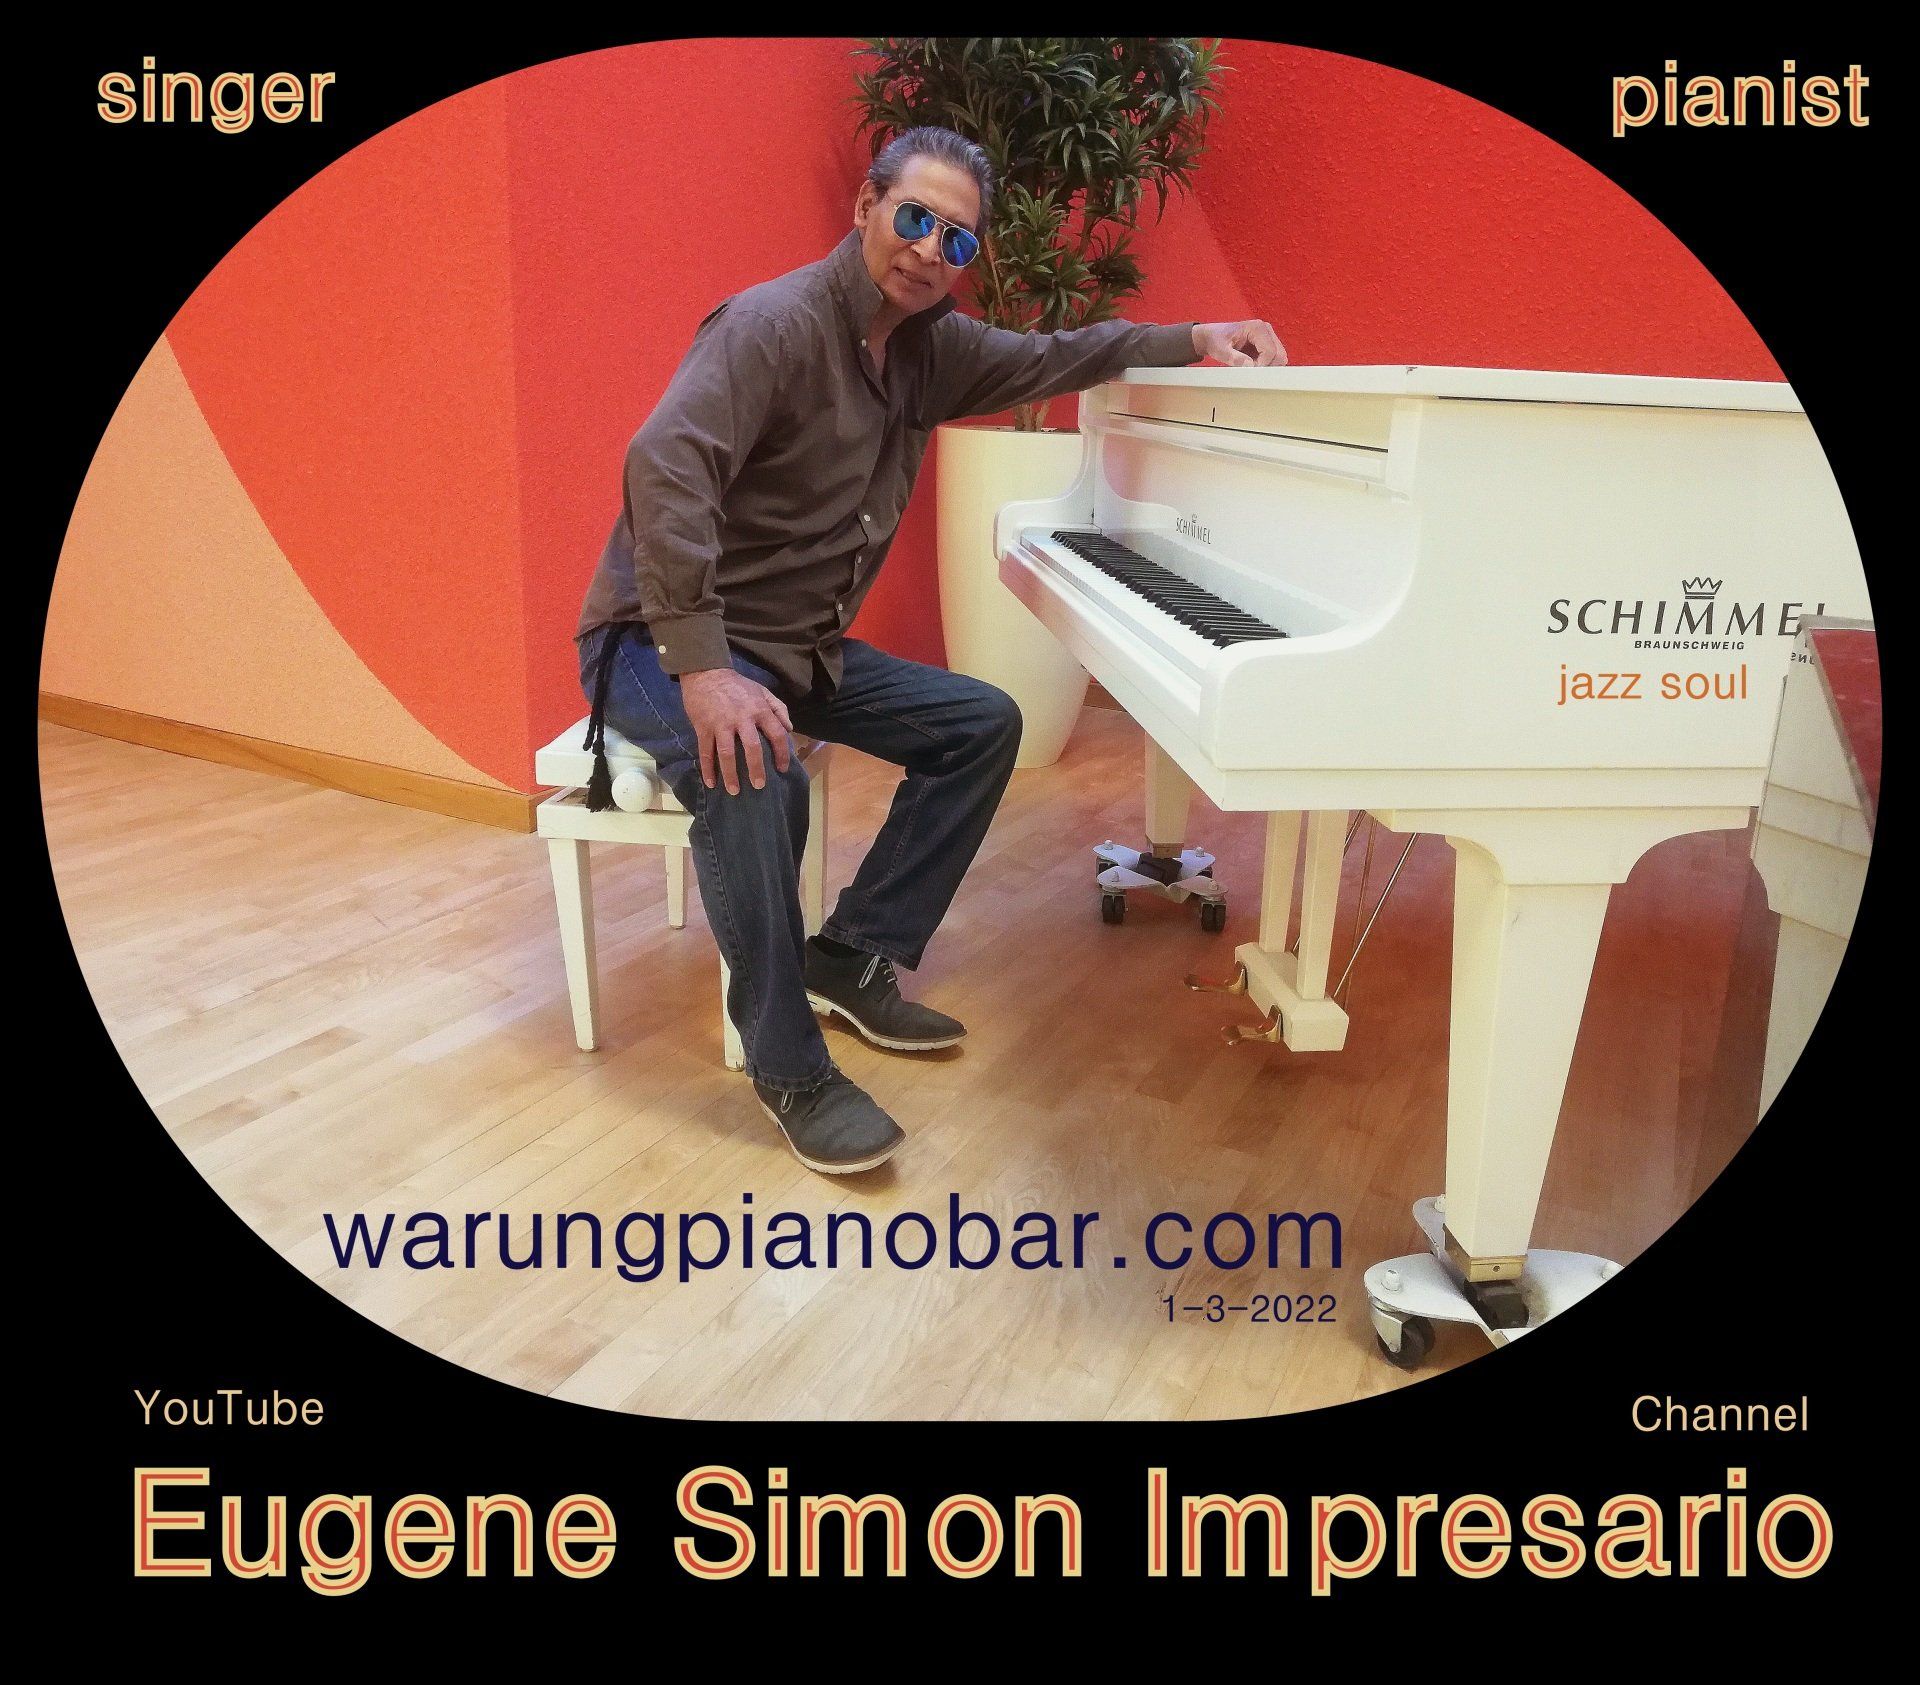 Eugene Simon Impresario Singer Pianist YouTube Channel 2022